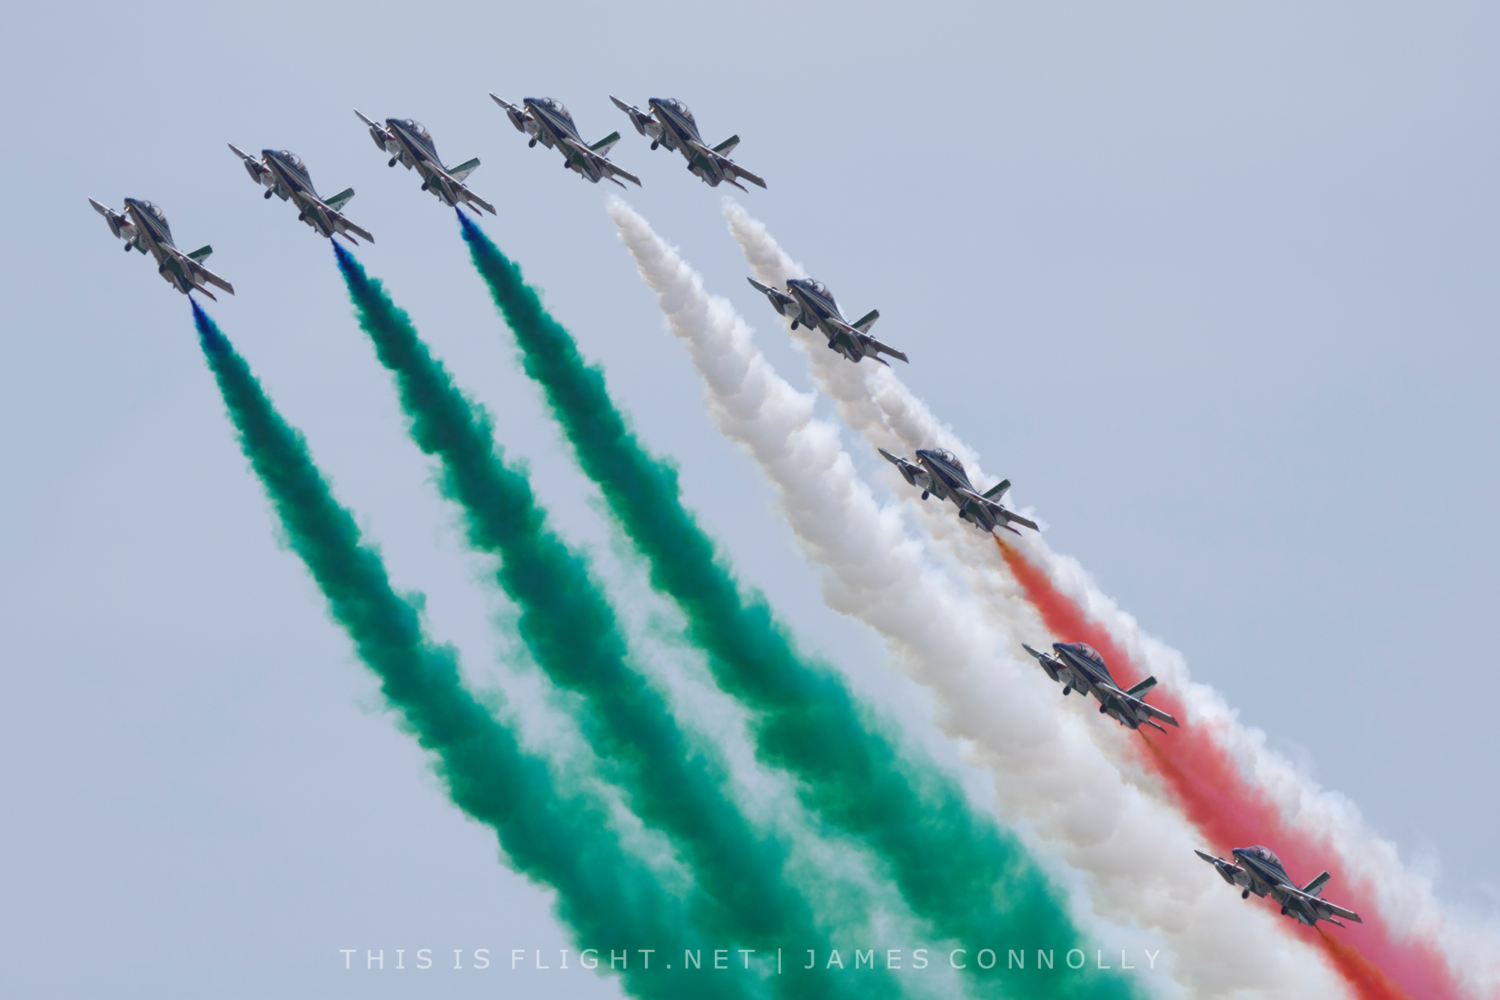 Frecce Tricolori 2023 airshow schedule